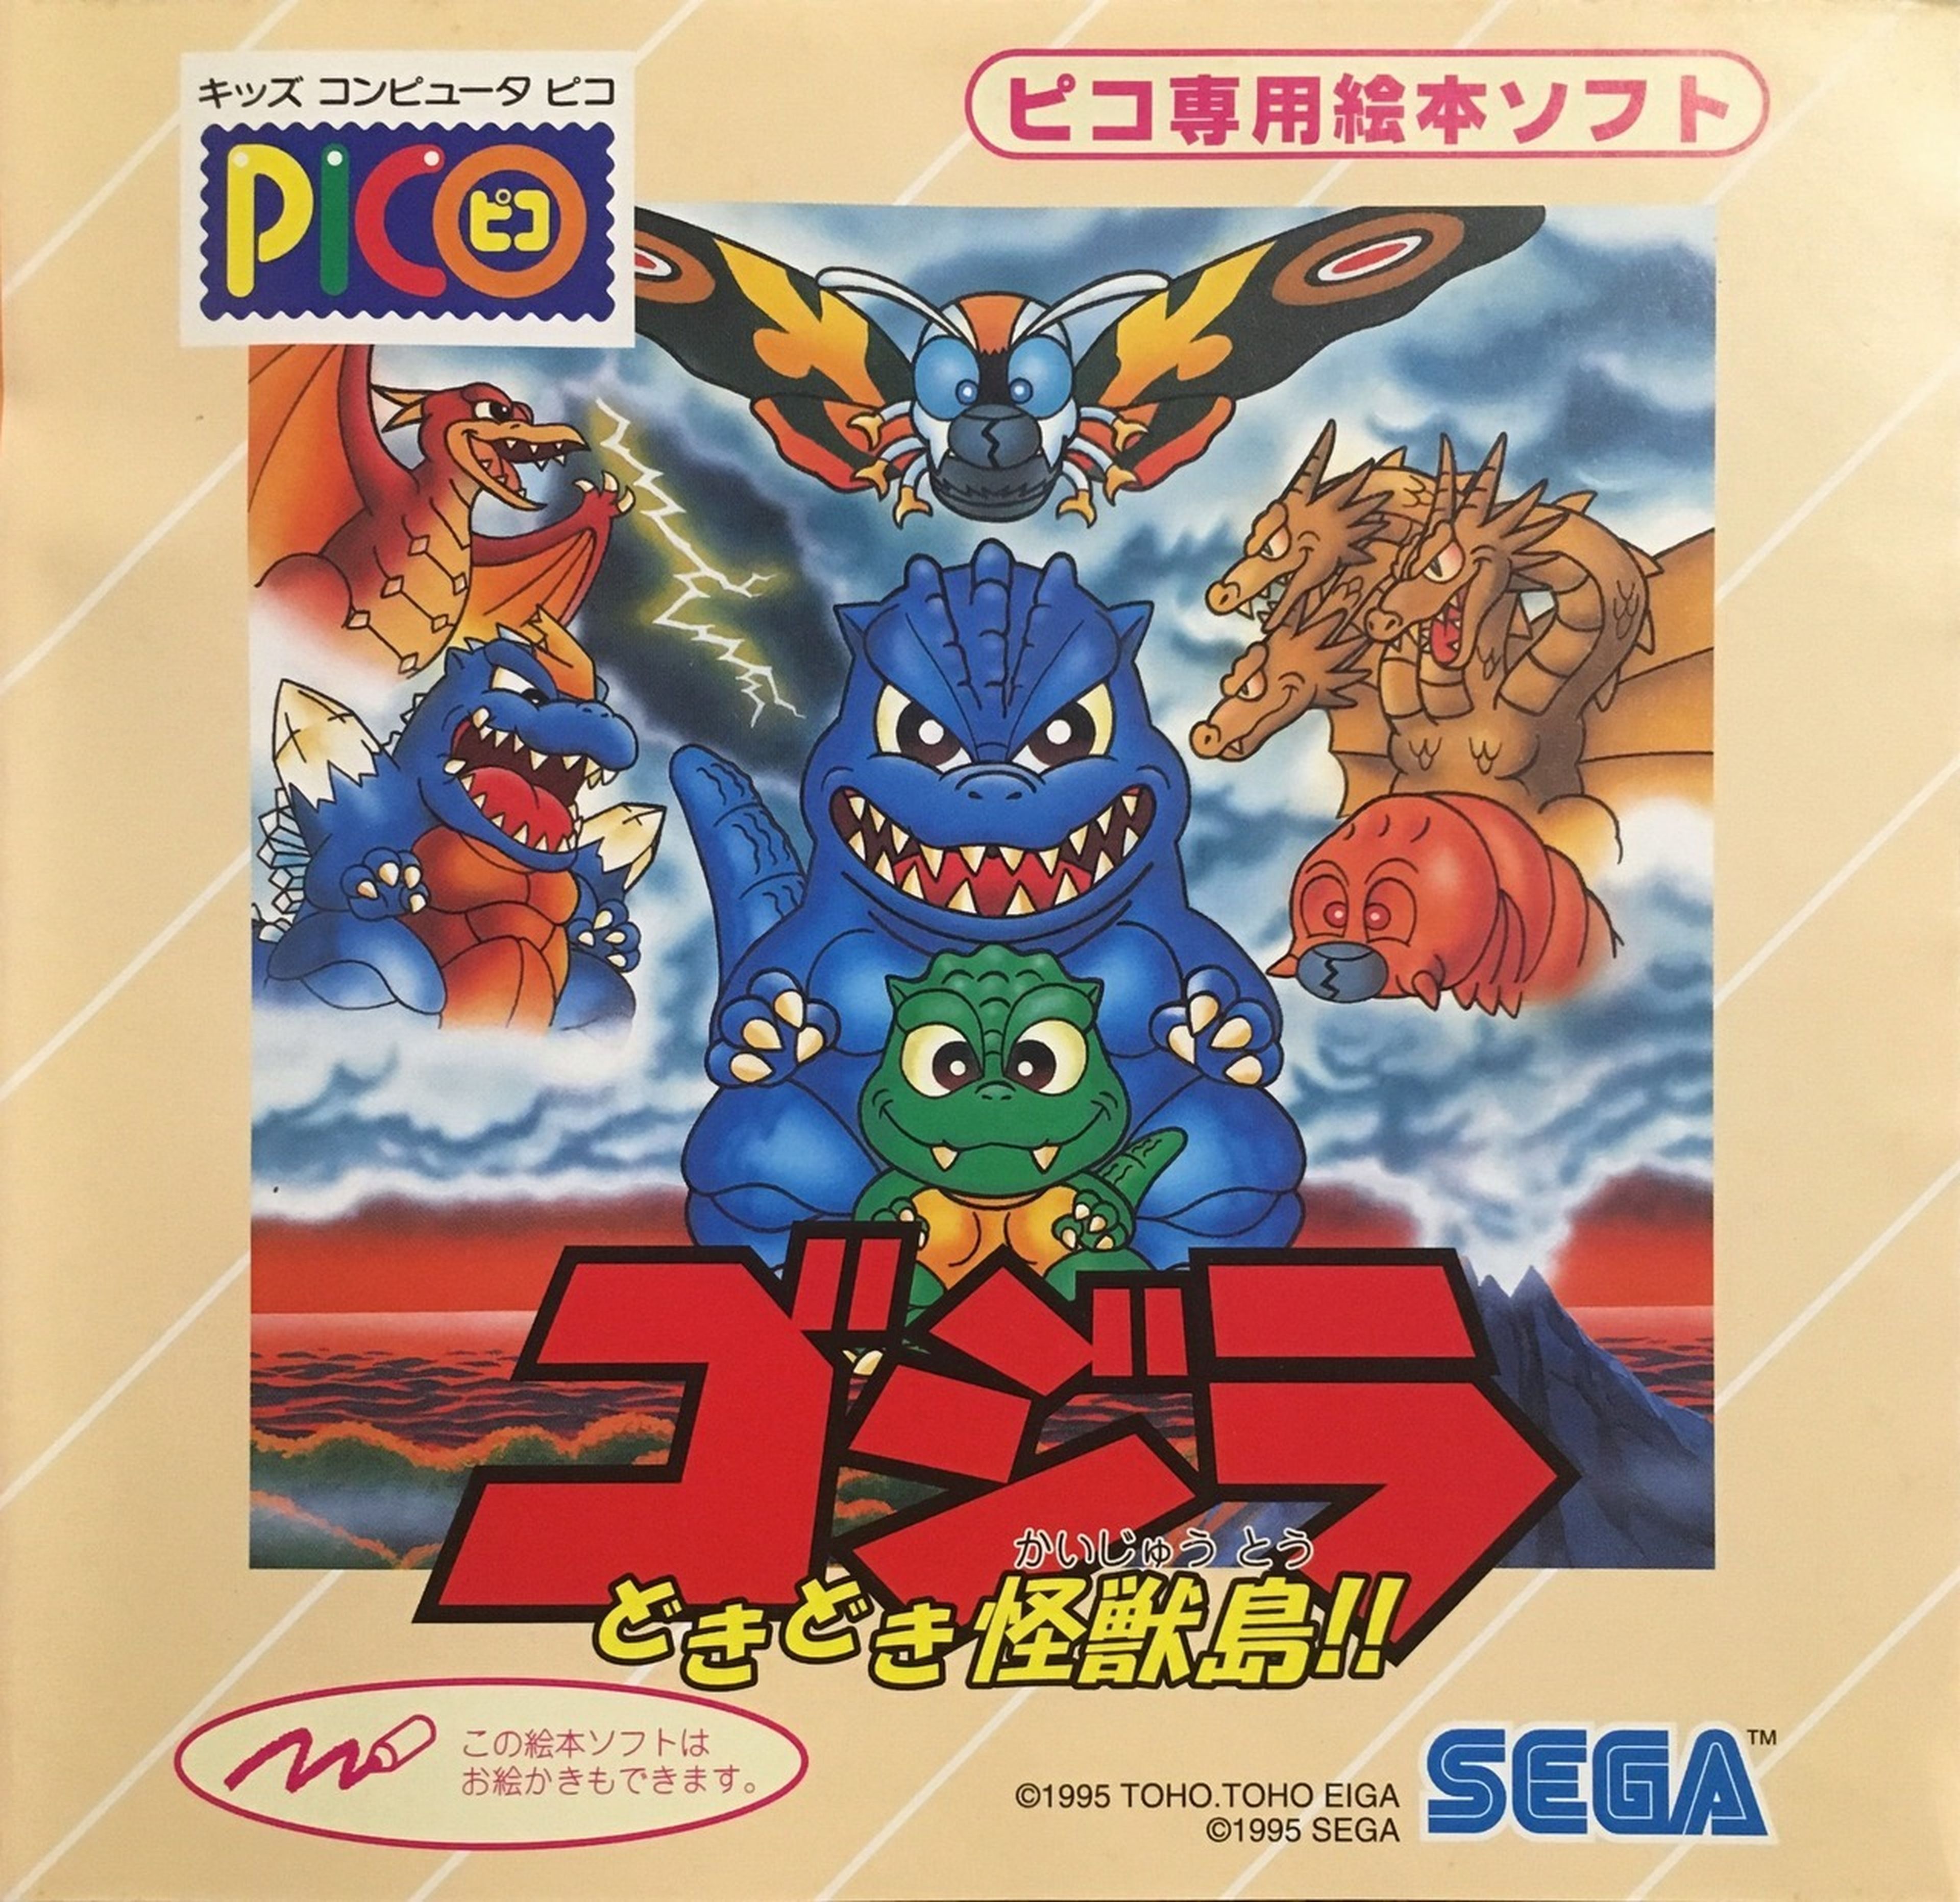 OdiSEGA Sega Pico 03